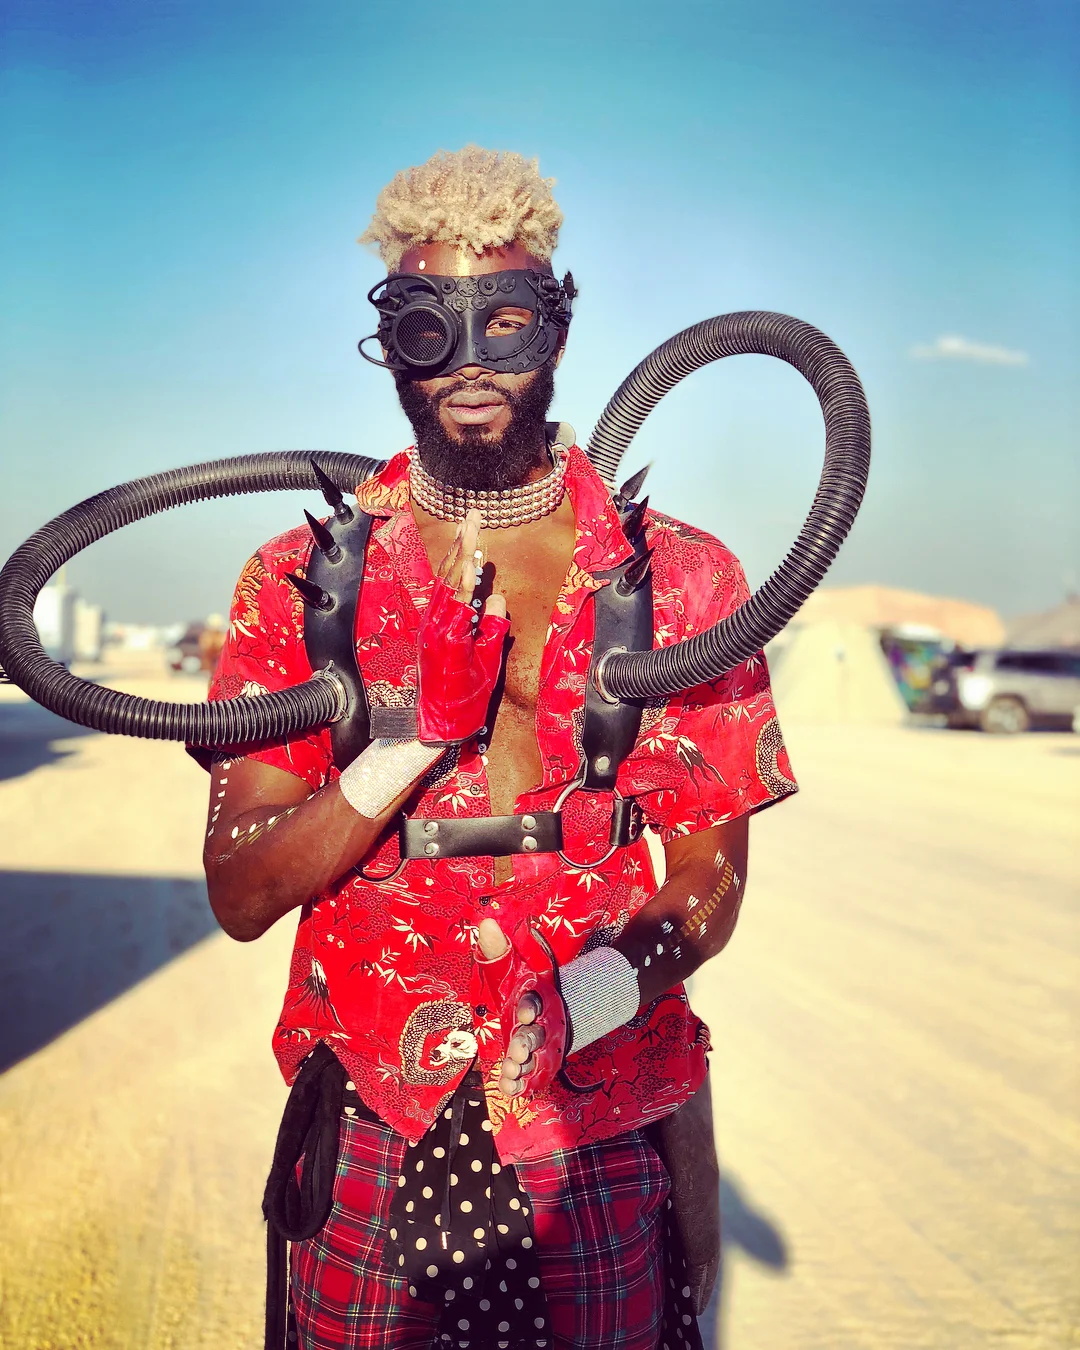 Полуголые тела, безумные костюмы и невероятные инсталляции фестиваля Burning Man-2018 - фото 400806